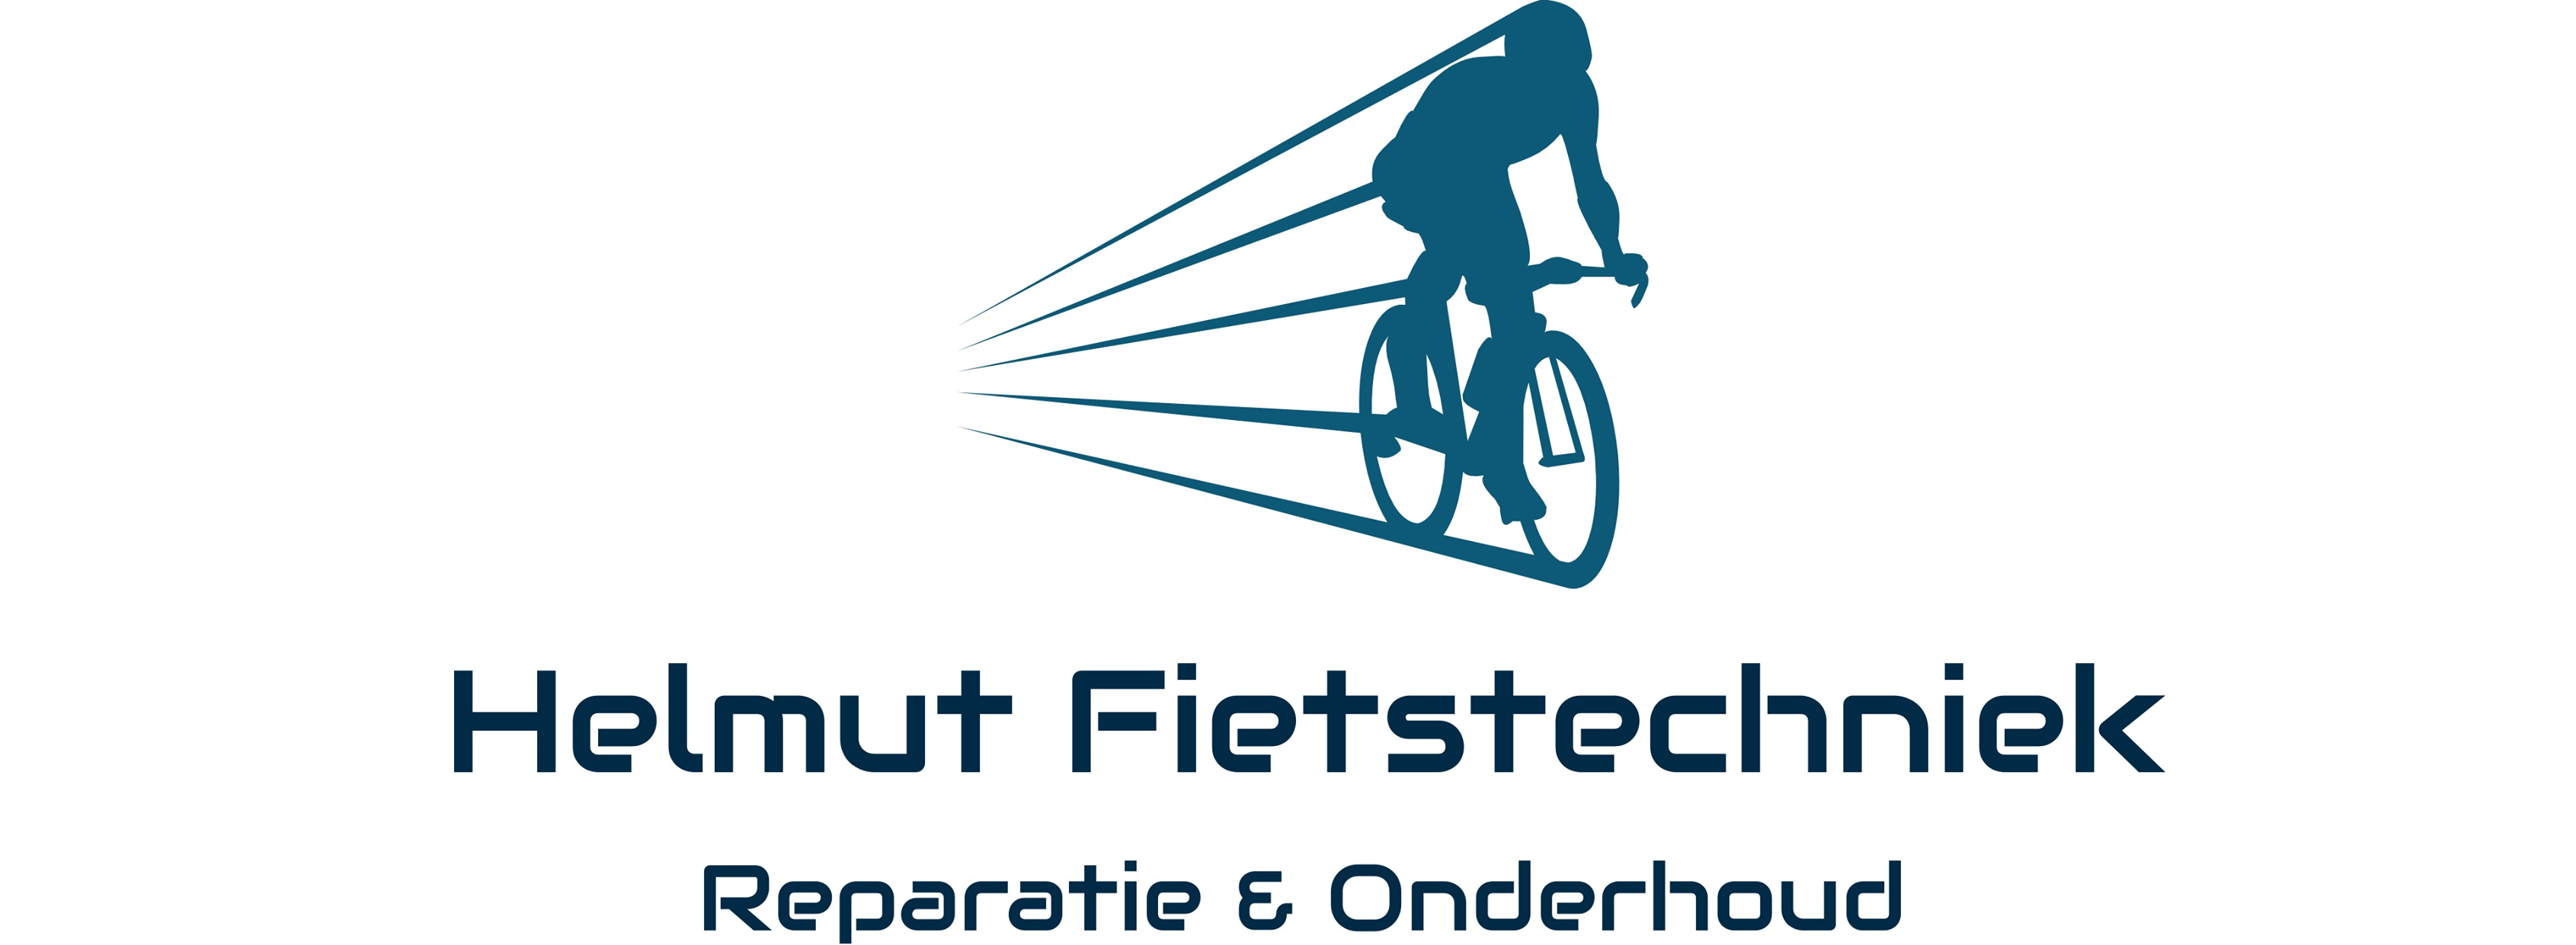 Helmut fietstechniek logo